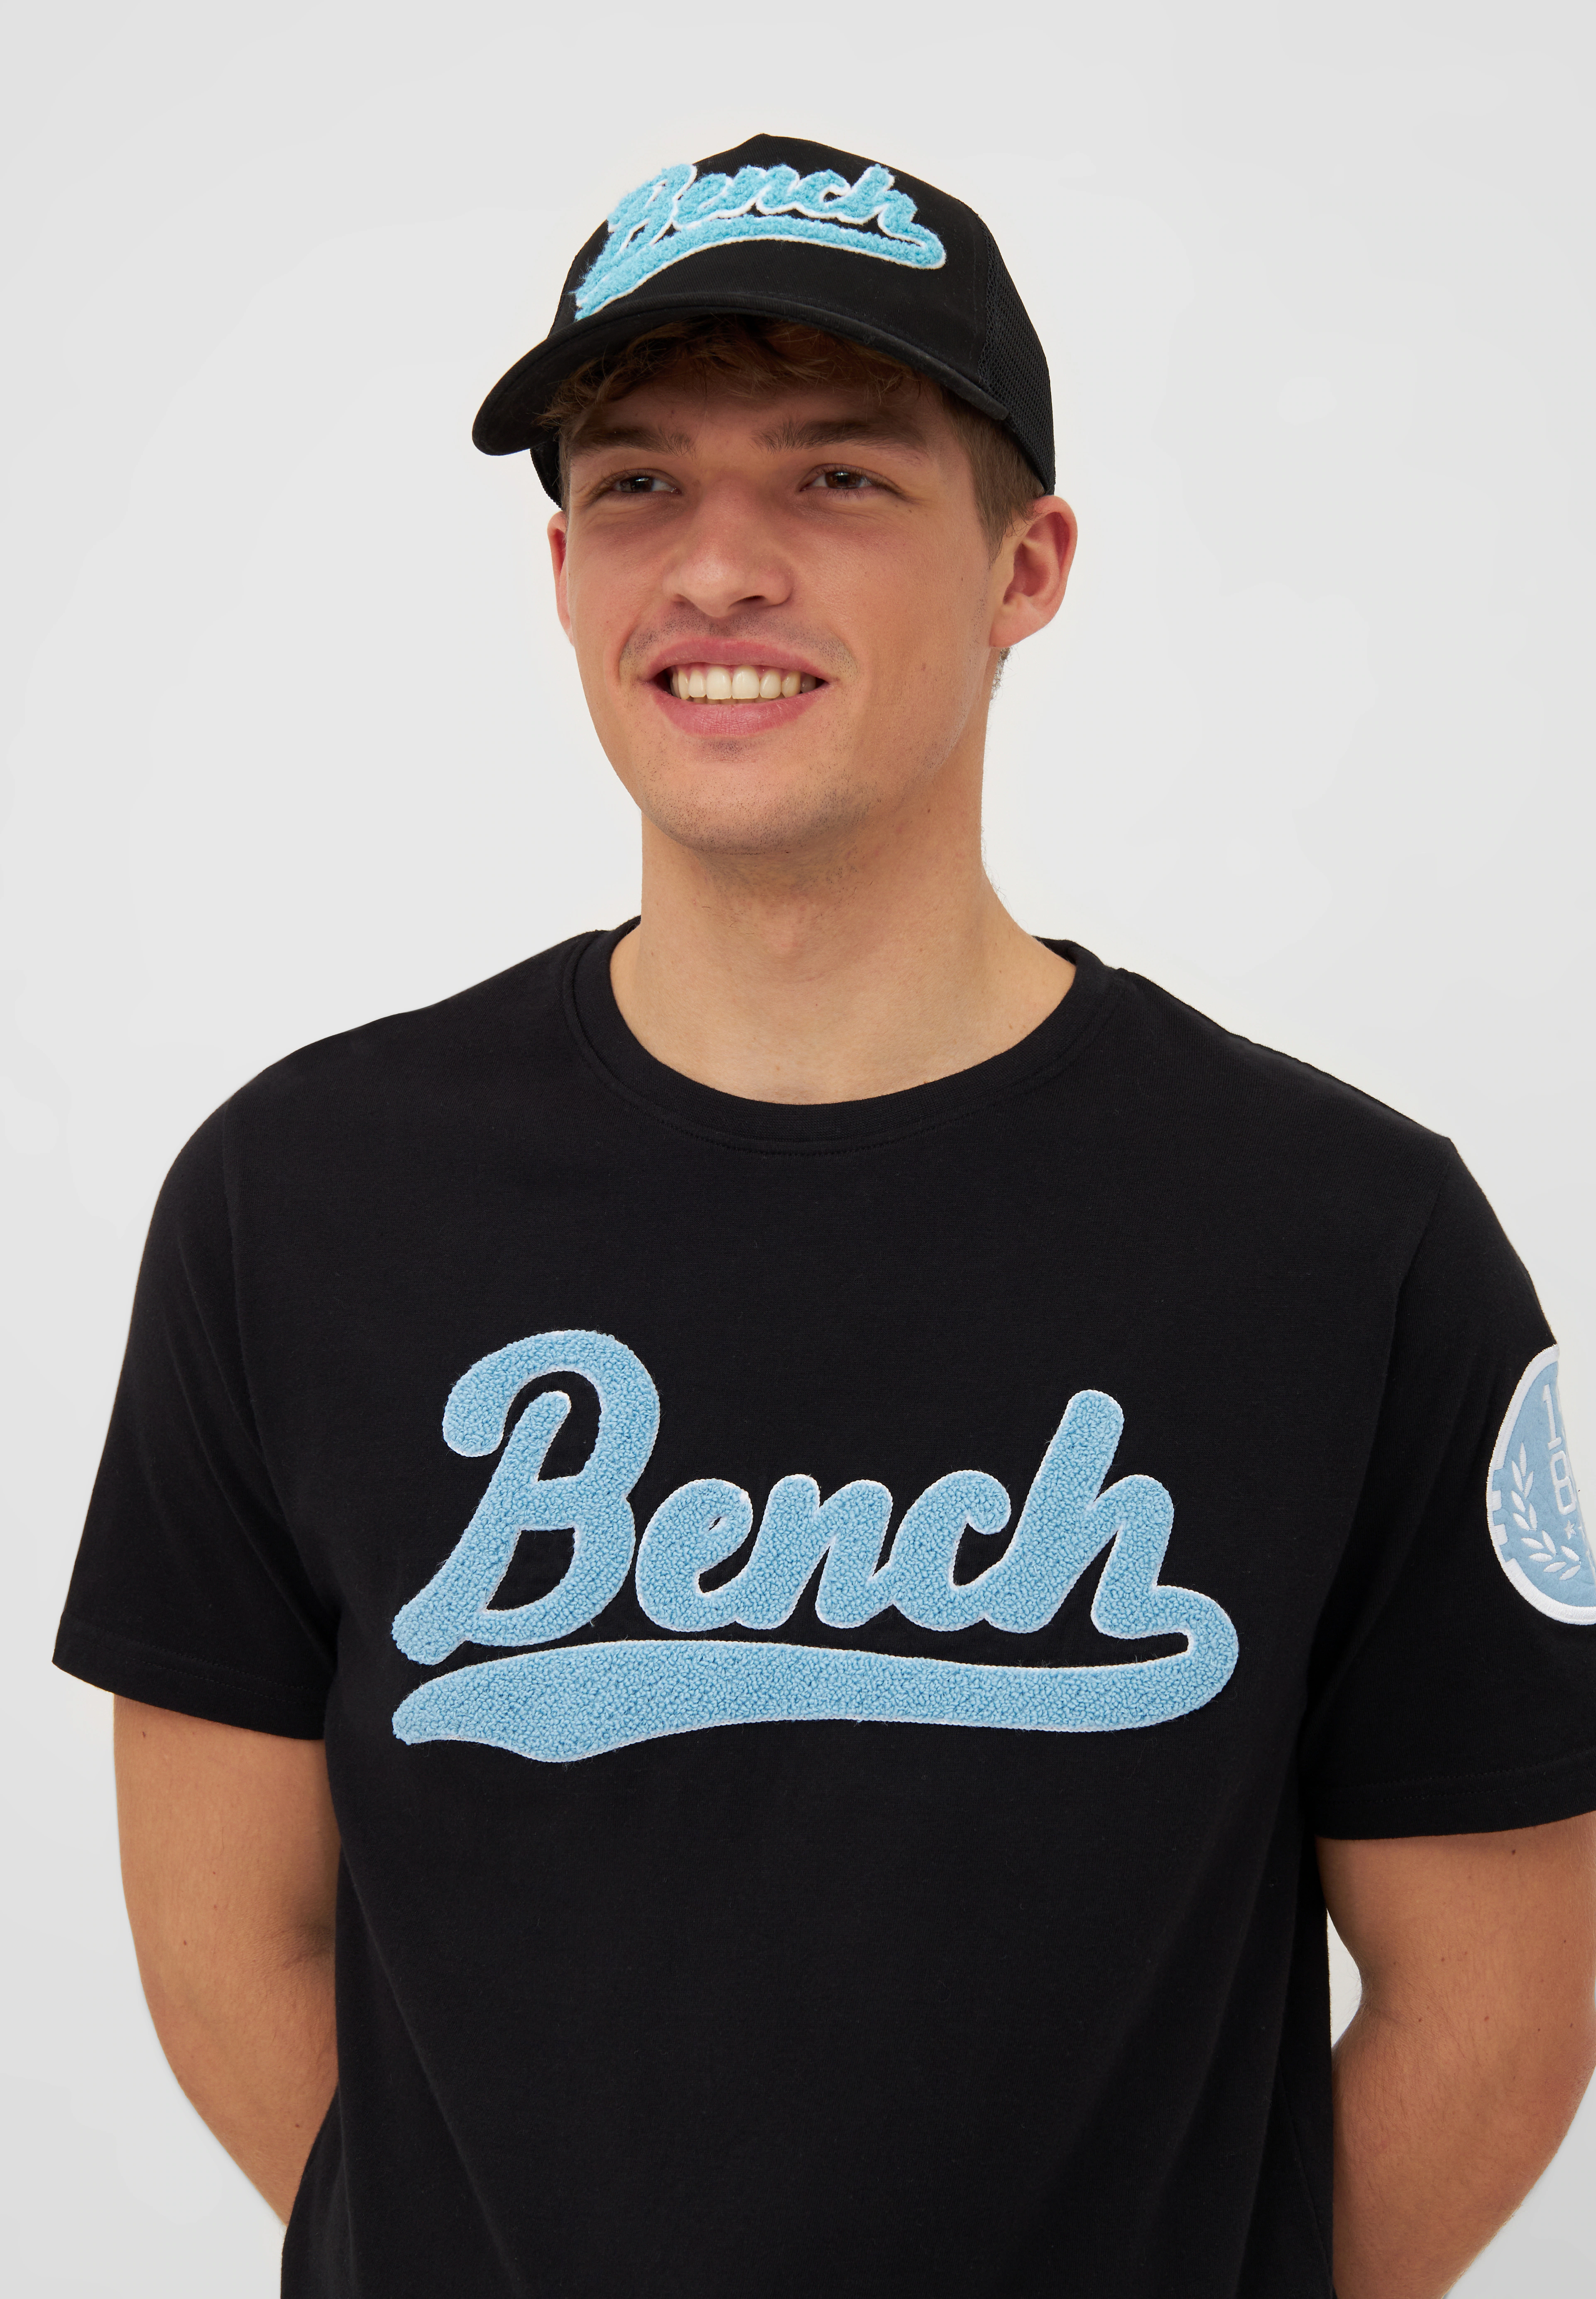 Bench. Baseball Cap "VARNY" günstig online kaufen